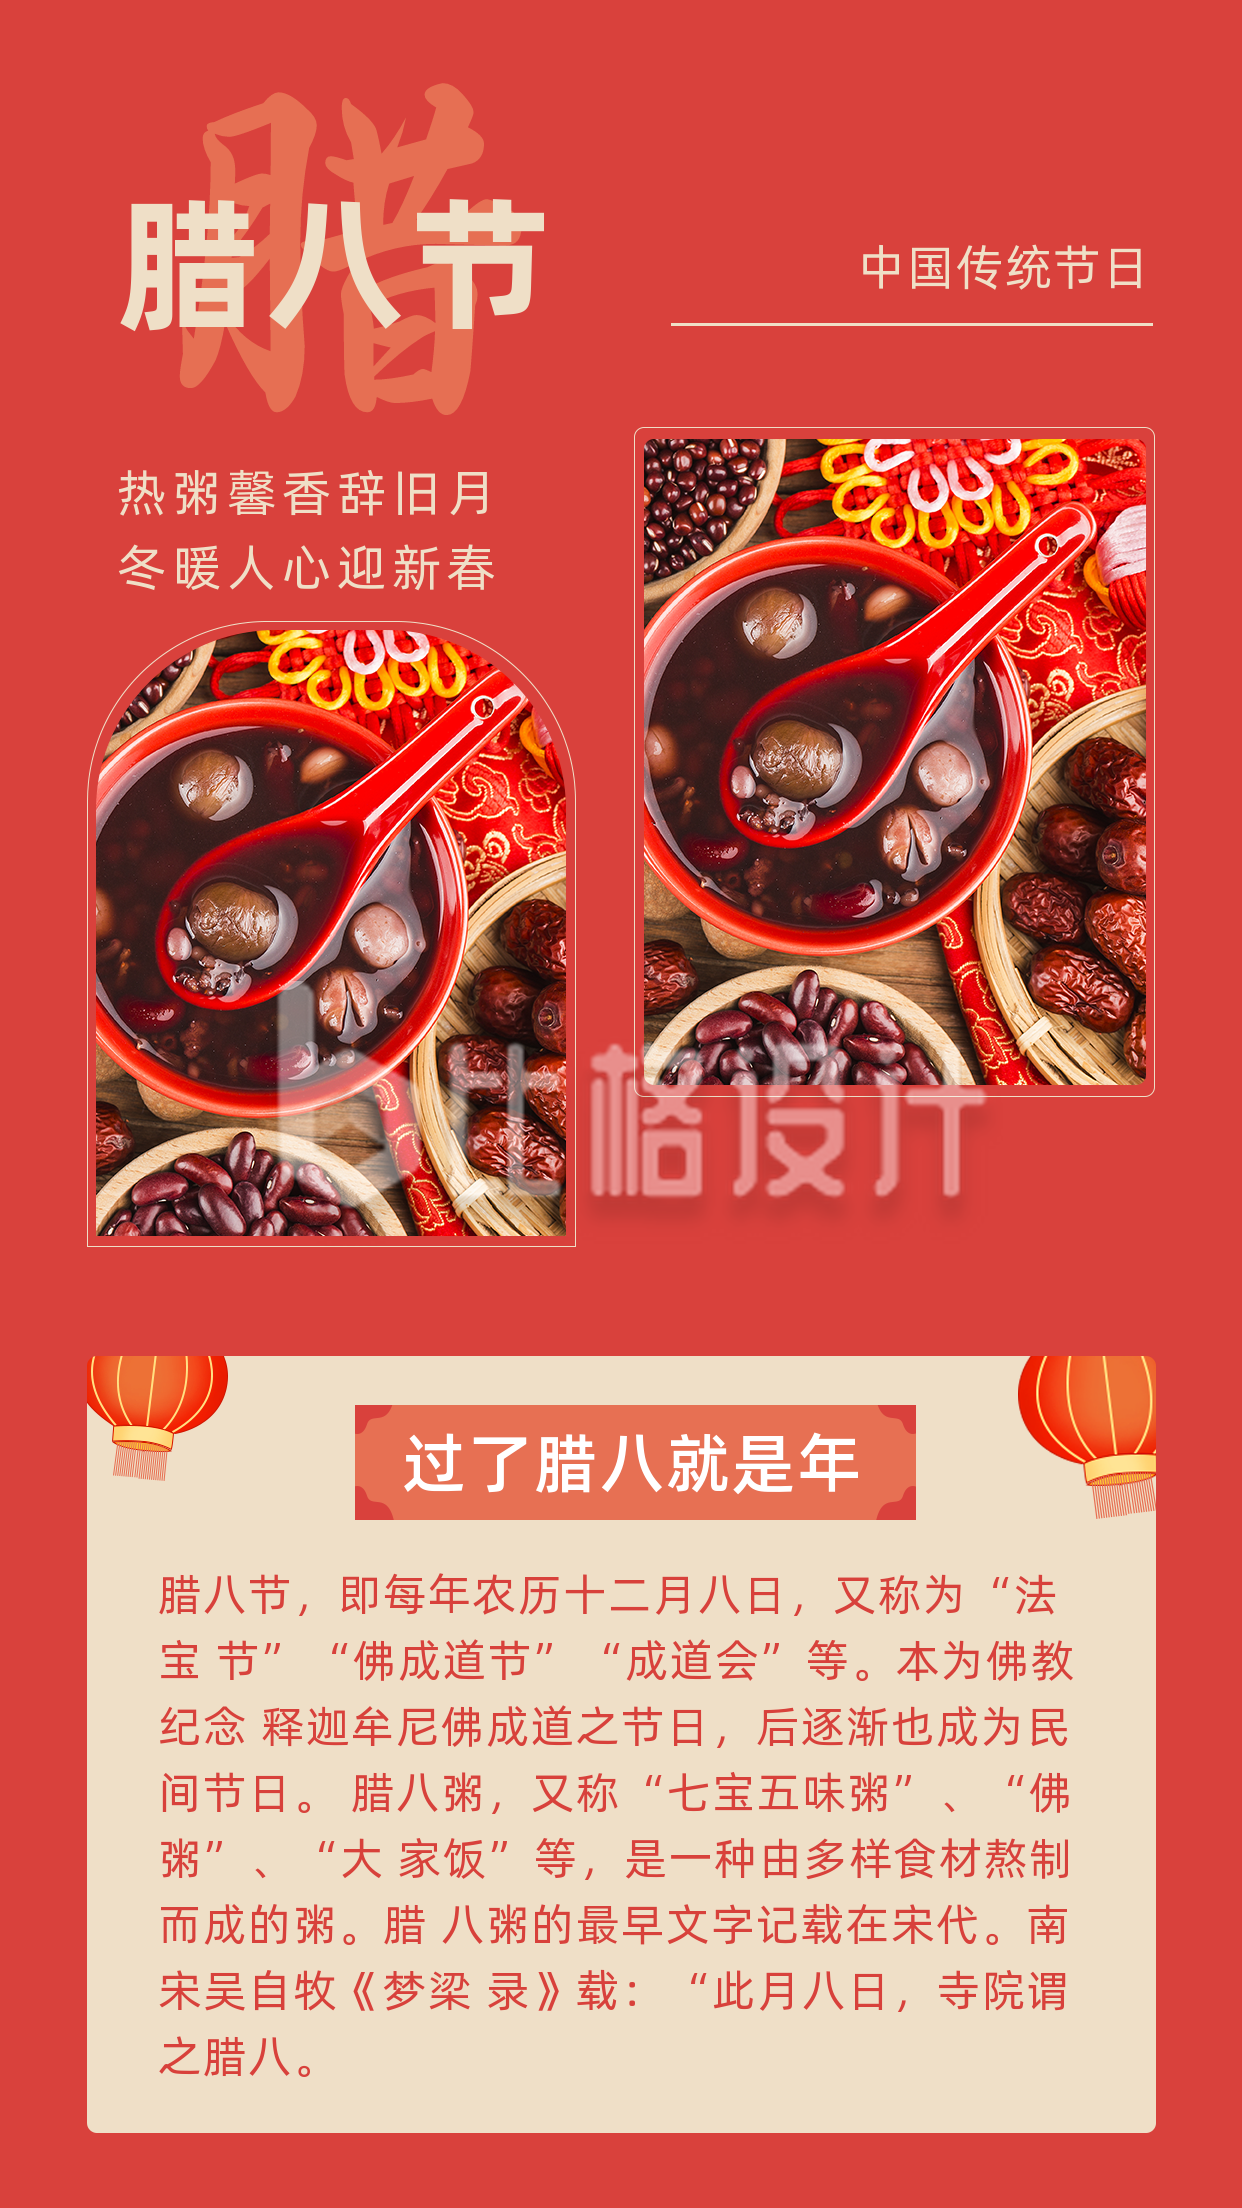 中国传统佳节腊八节喝腊八粥竖版配图